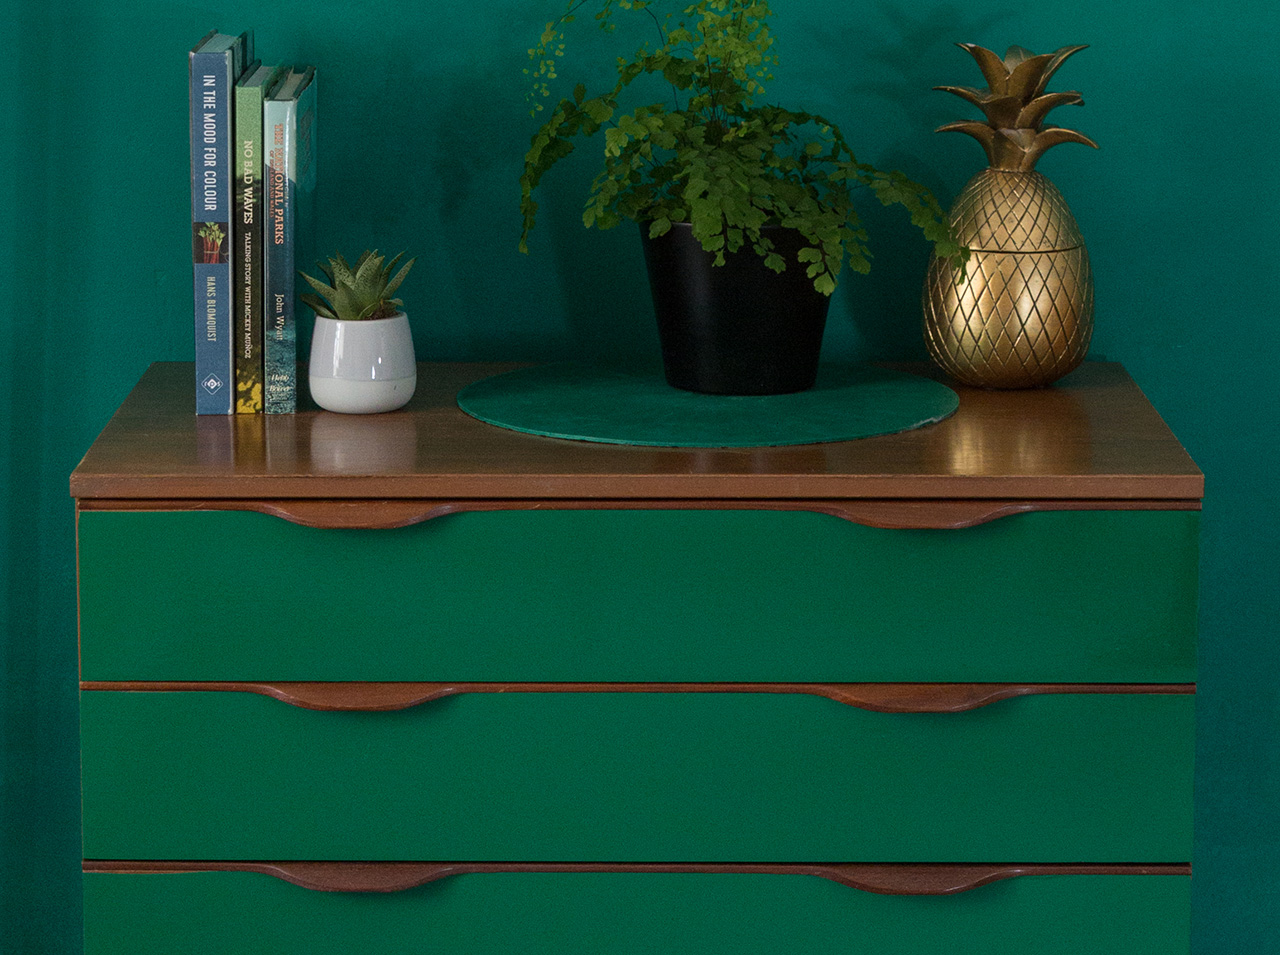 Komoda zaprojektowana przy użyciu folii samoprzylepnej w kolorze szmaragdowym, ustawiona na tle zielonej ściany.